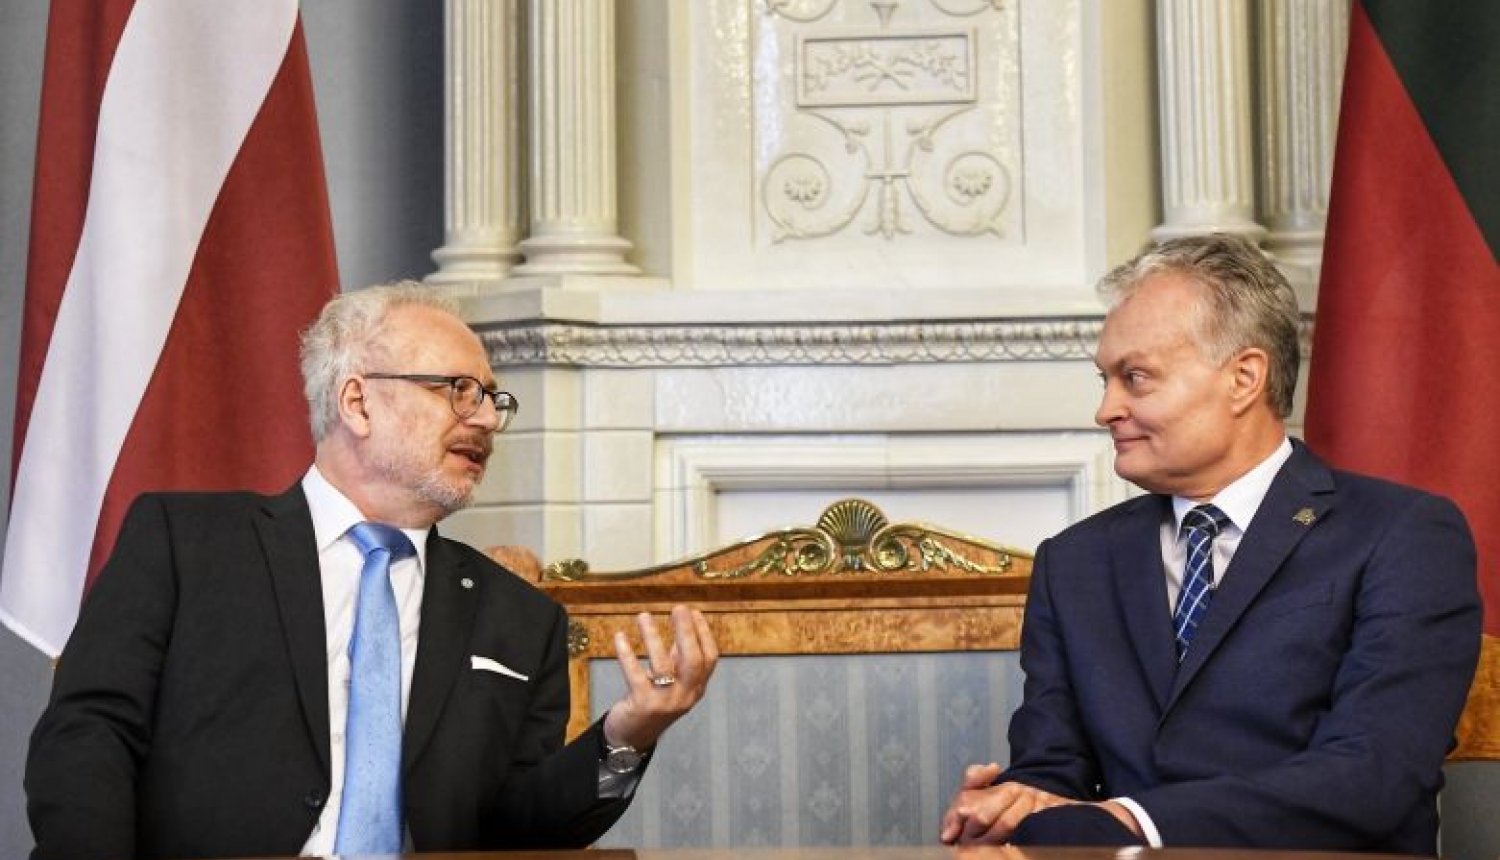 Valsts prezidents: Latvijas un Lietuvas stratēģiskais redzējums par elektroenerģijas tīklu ir absolūti vienāds